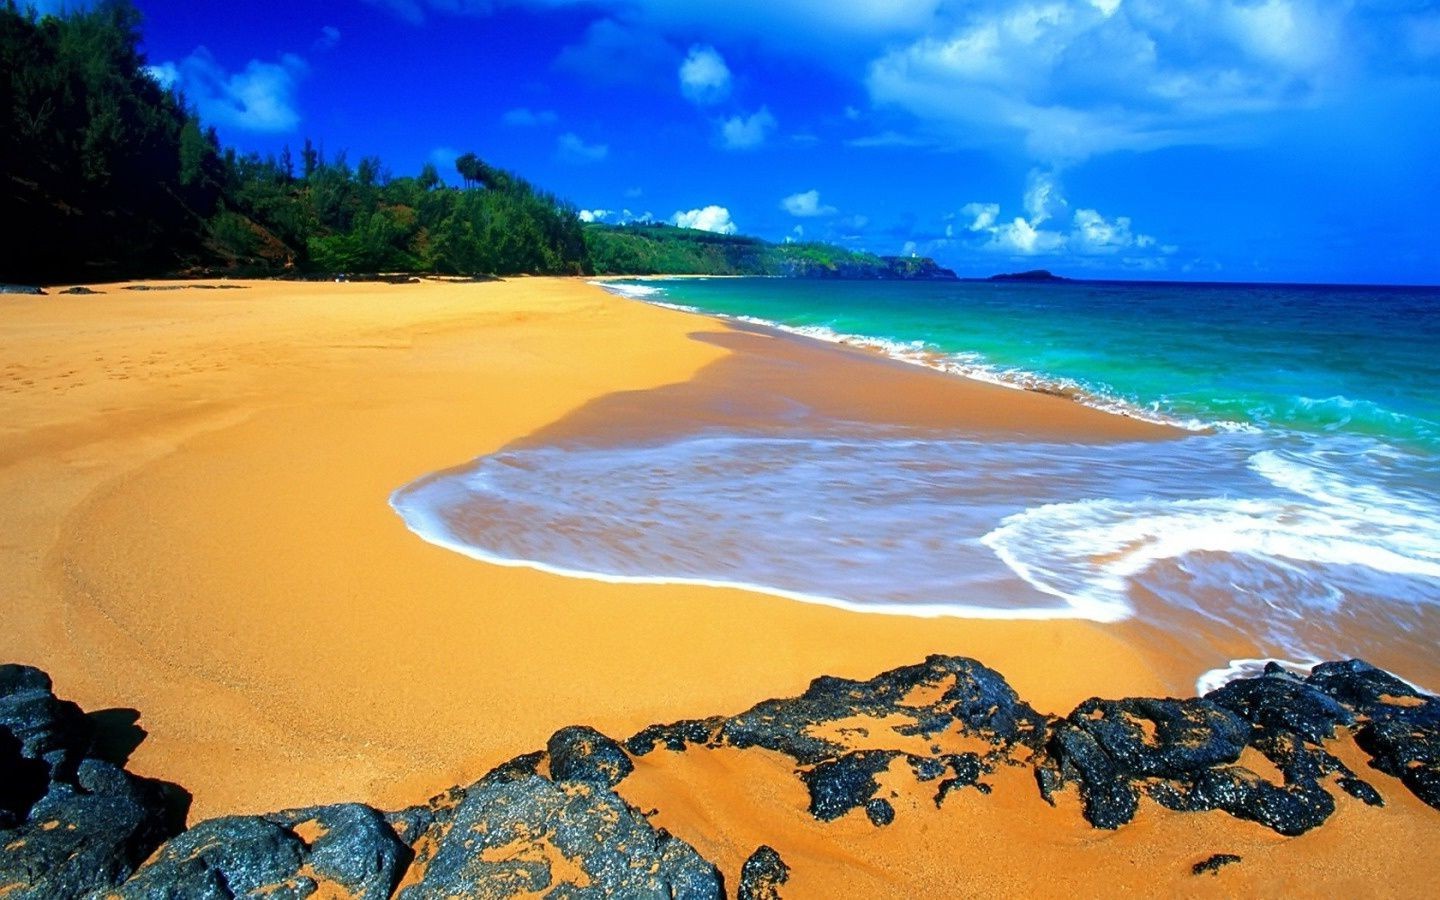 море и океан песок пляж моря воды путешествия океан живописный тропический прибой лето море горячая отпуск пейзаж остров пейзаж хорошую погоду солнце идиллия